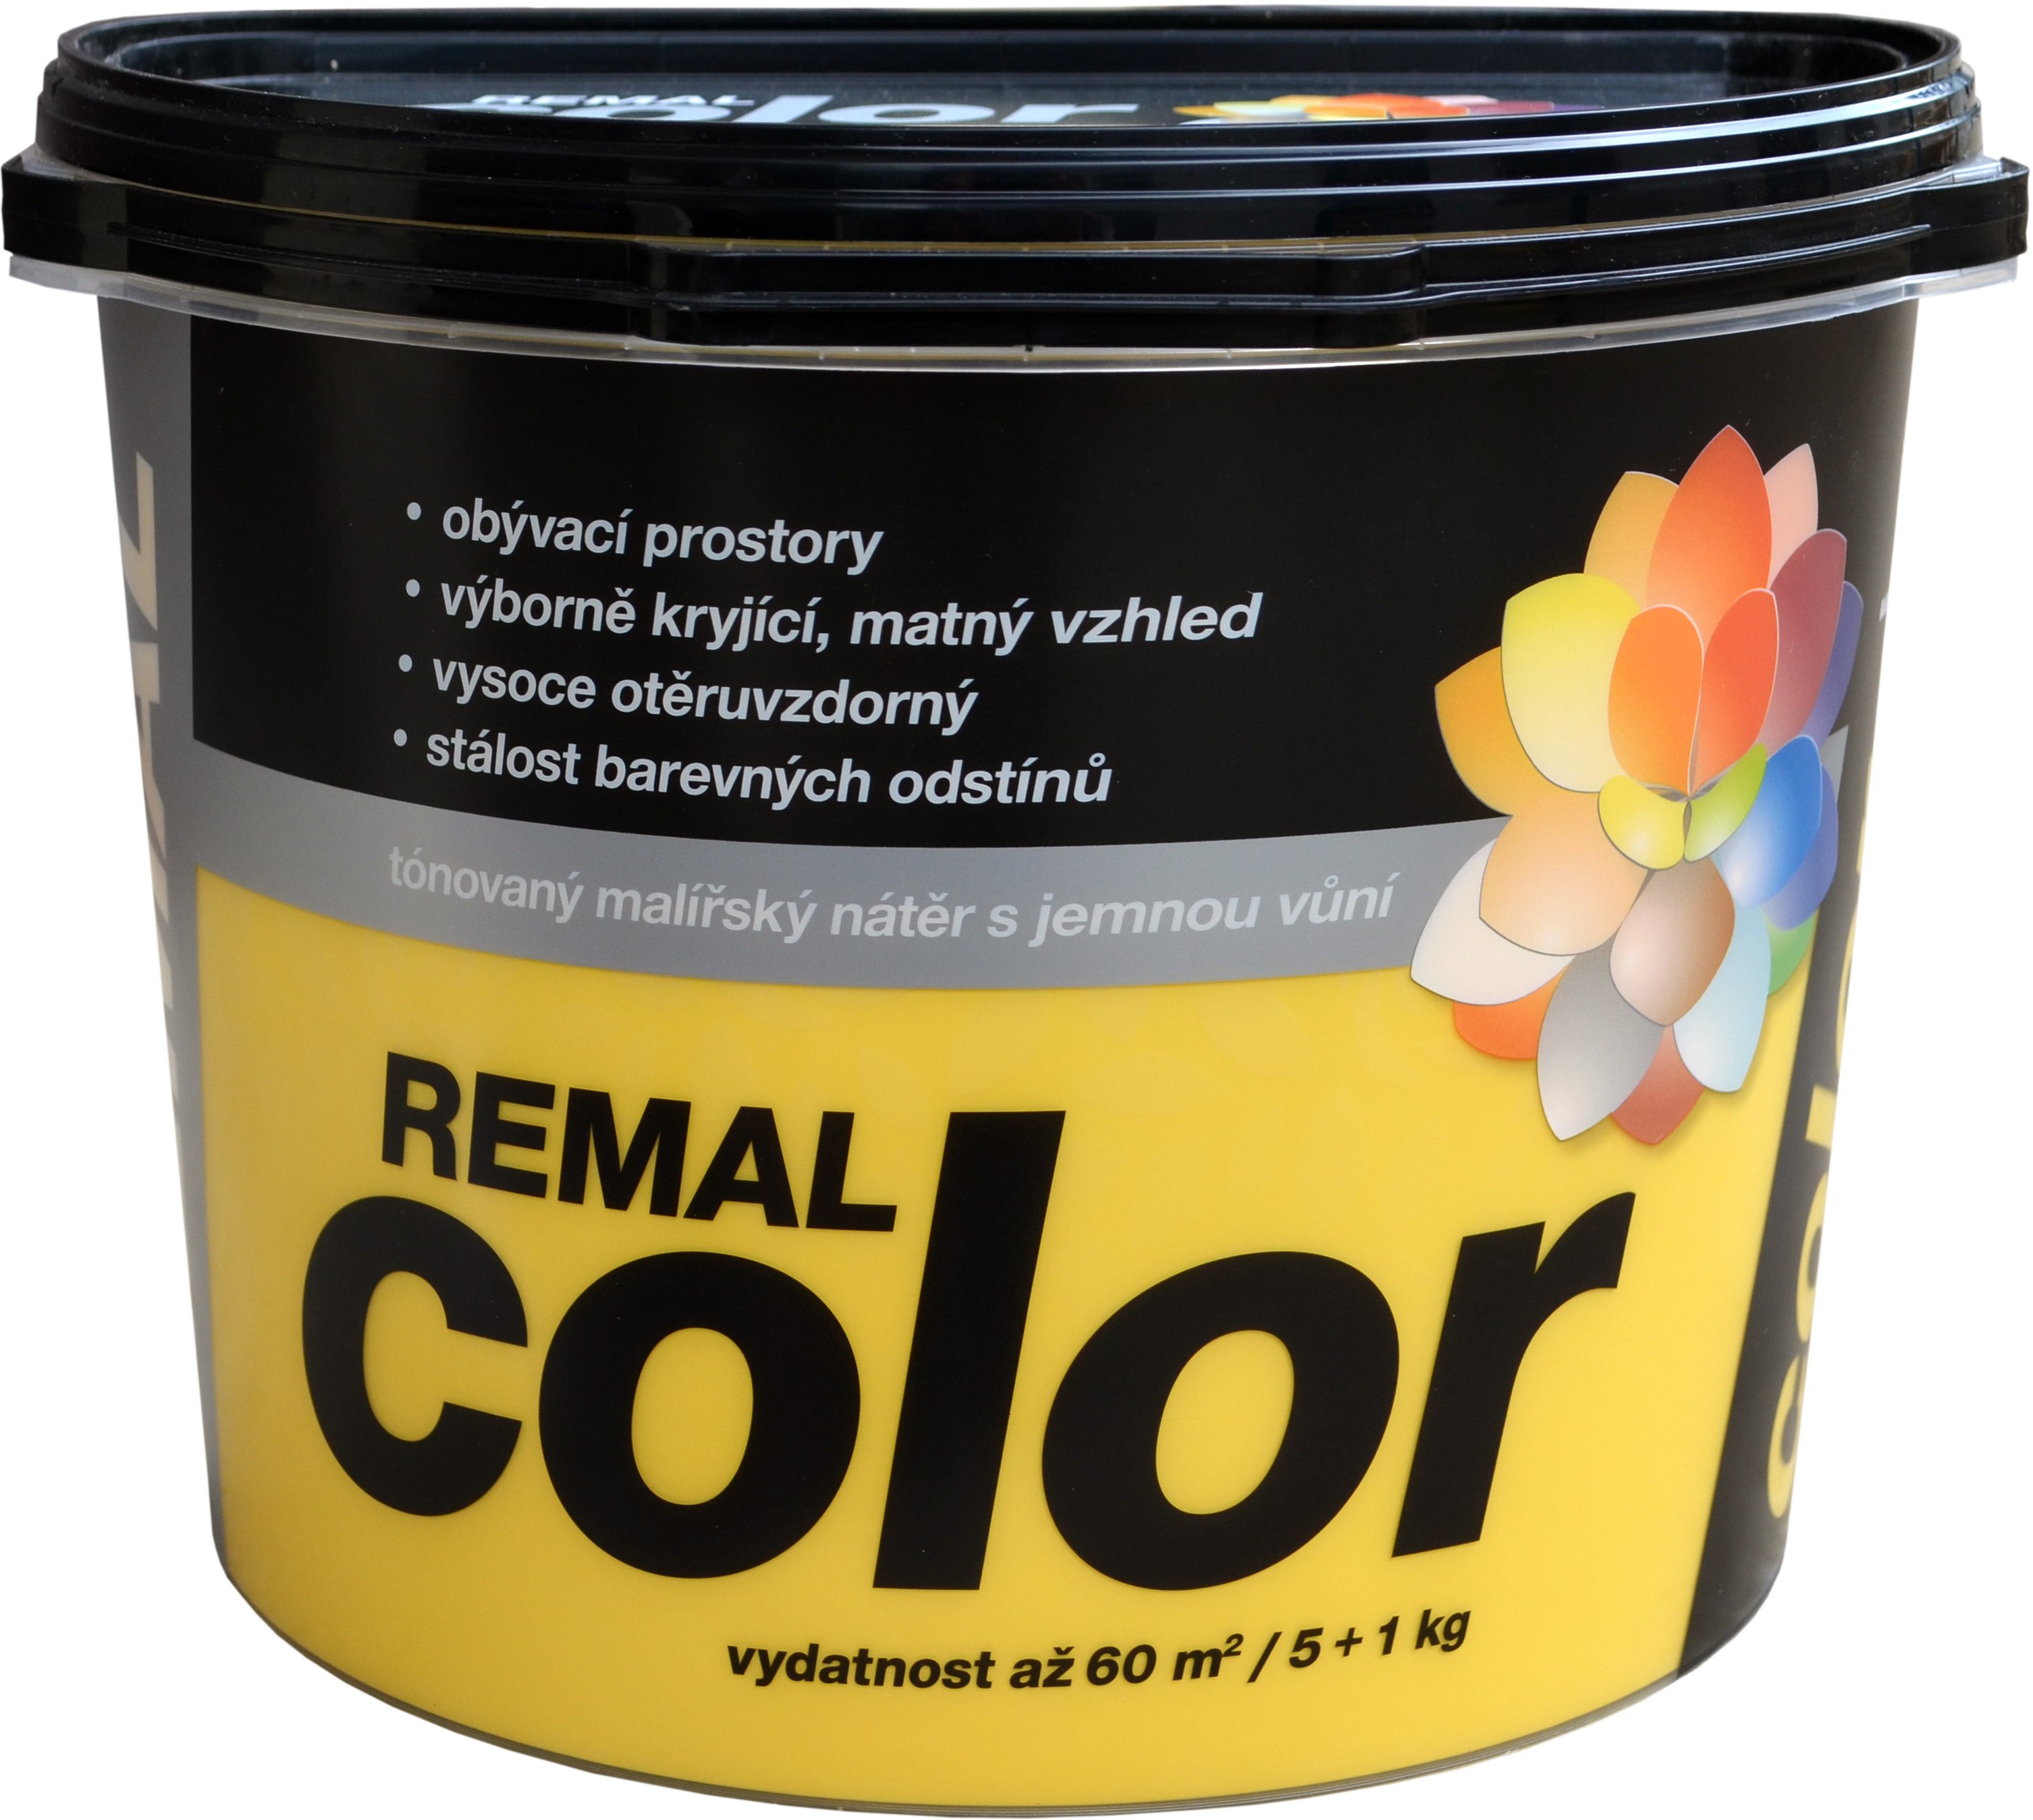 REMAL COLOR - tónovaný maliarsky náter s jemnou vôňou 6 kg 0280 - frappe